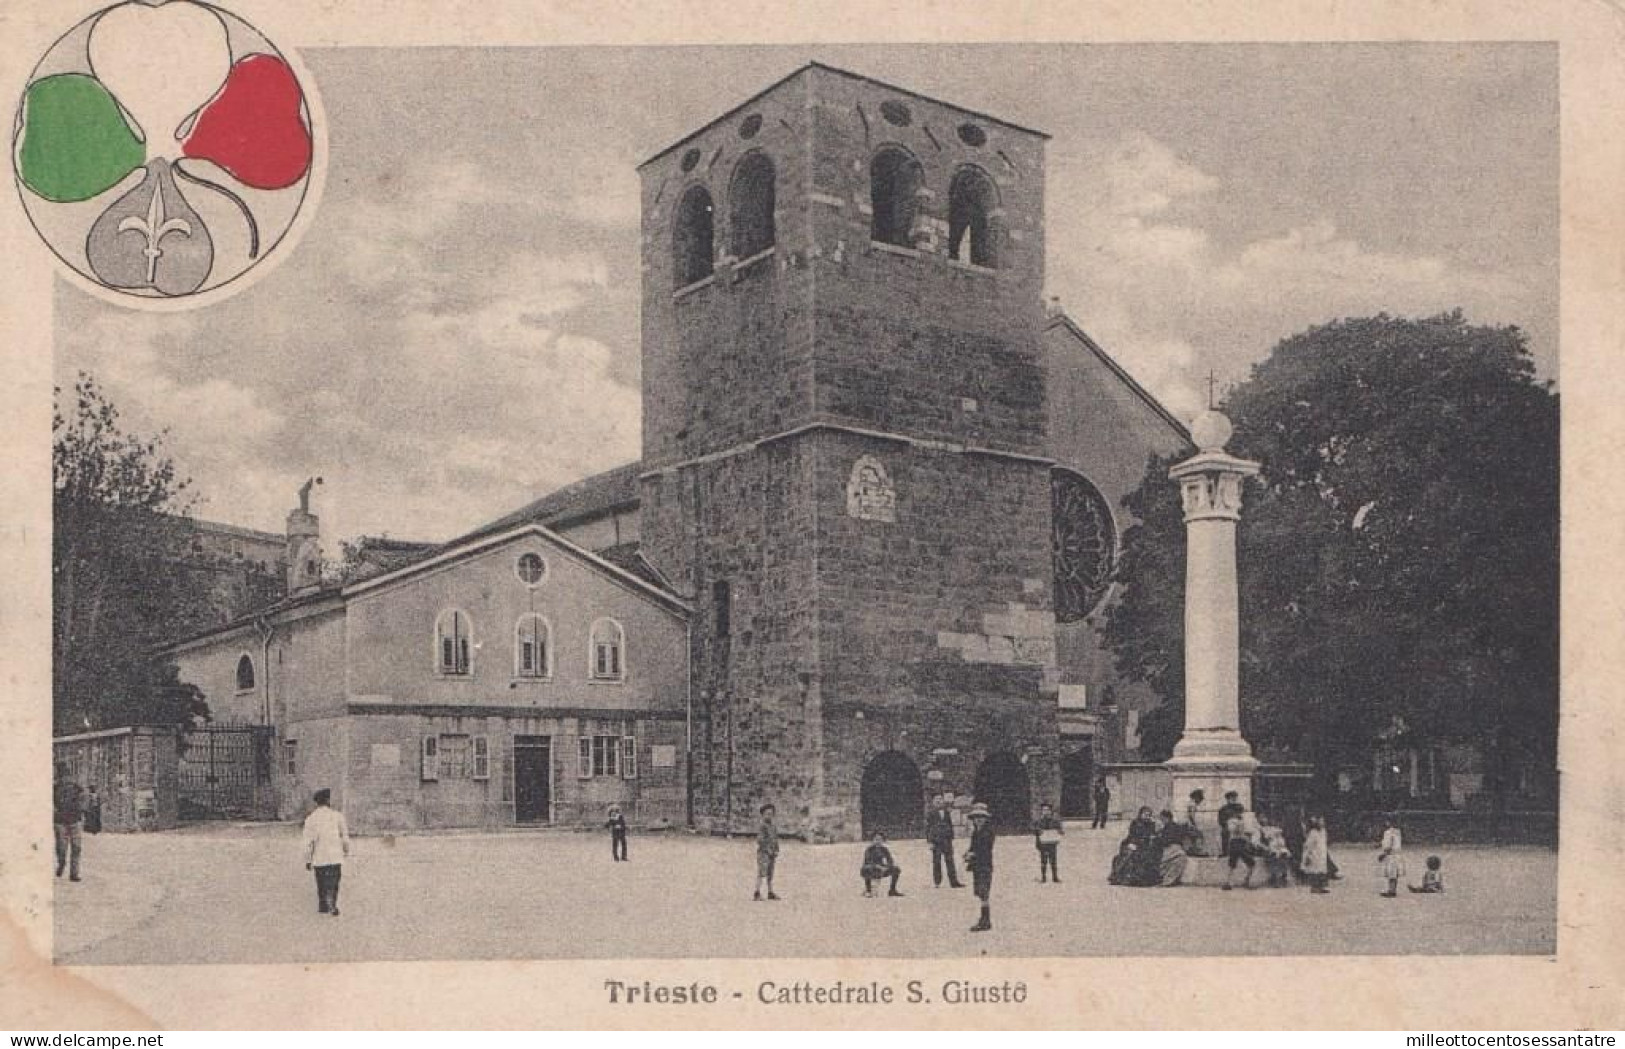 374 - TRIESTE  - Cartolina Illustrata " Trieste - Cattedrale S. Giusto  " Del 1919 Da Trieste A Bologna Con Cent 10 - - Storia Postale